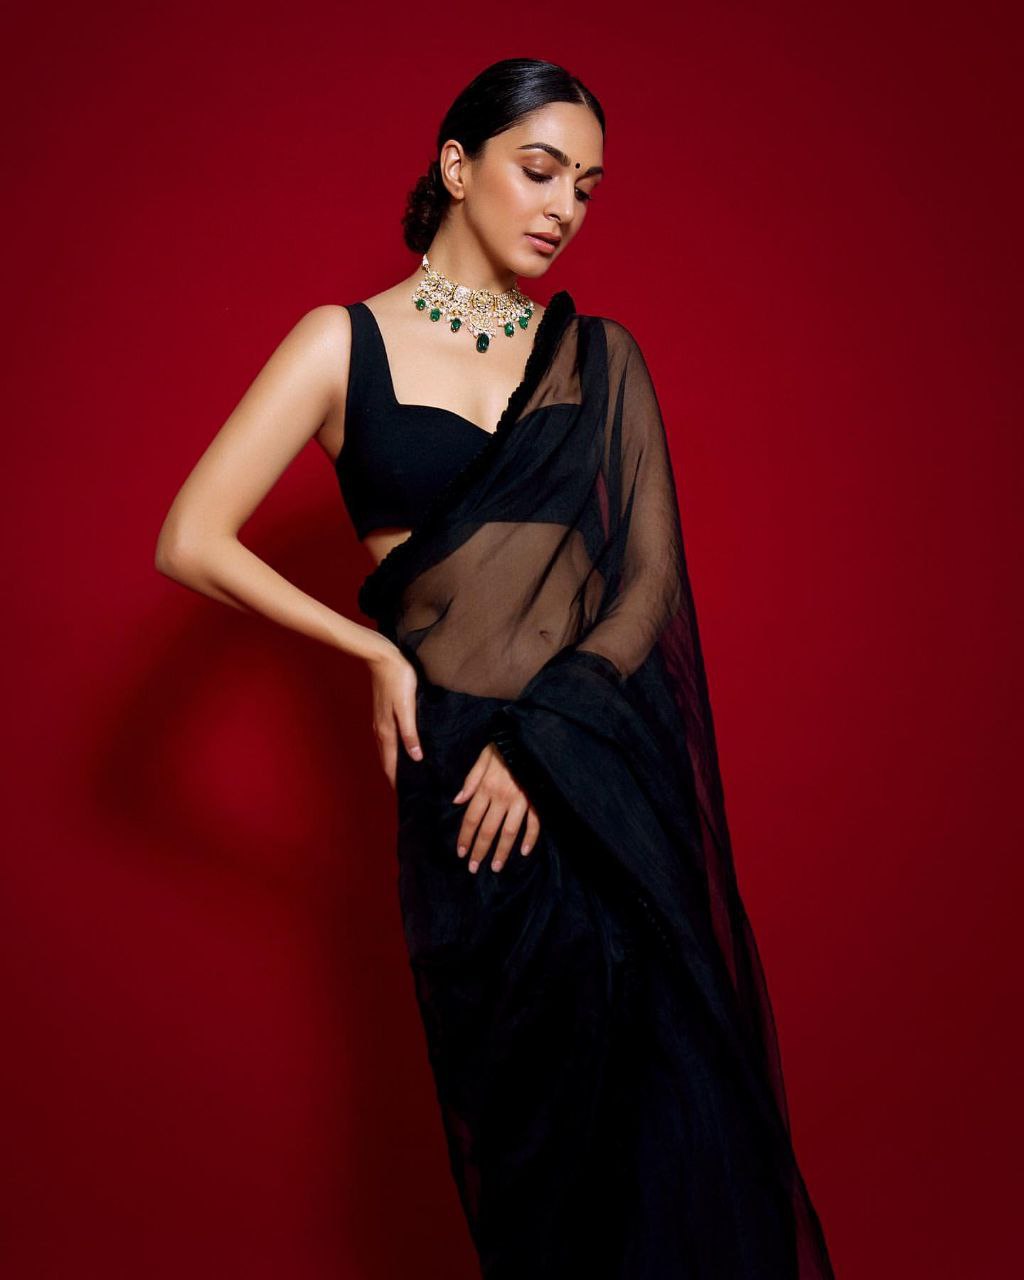 Kiara advani black dress